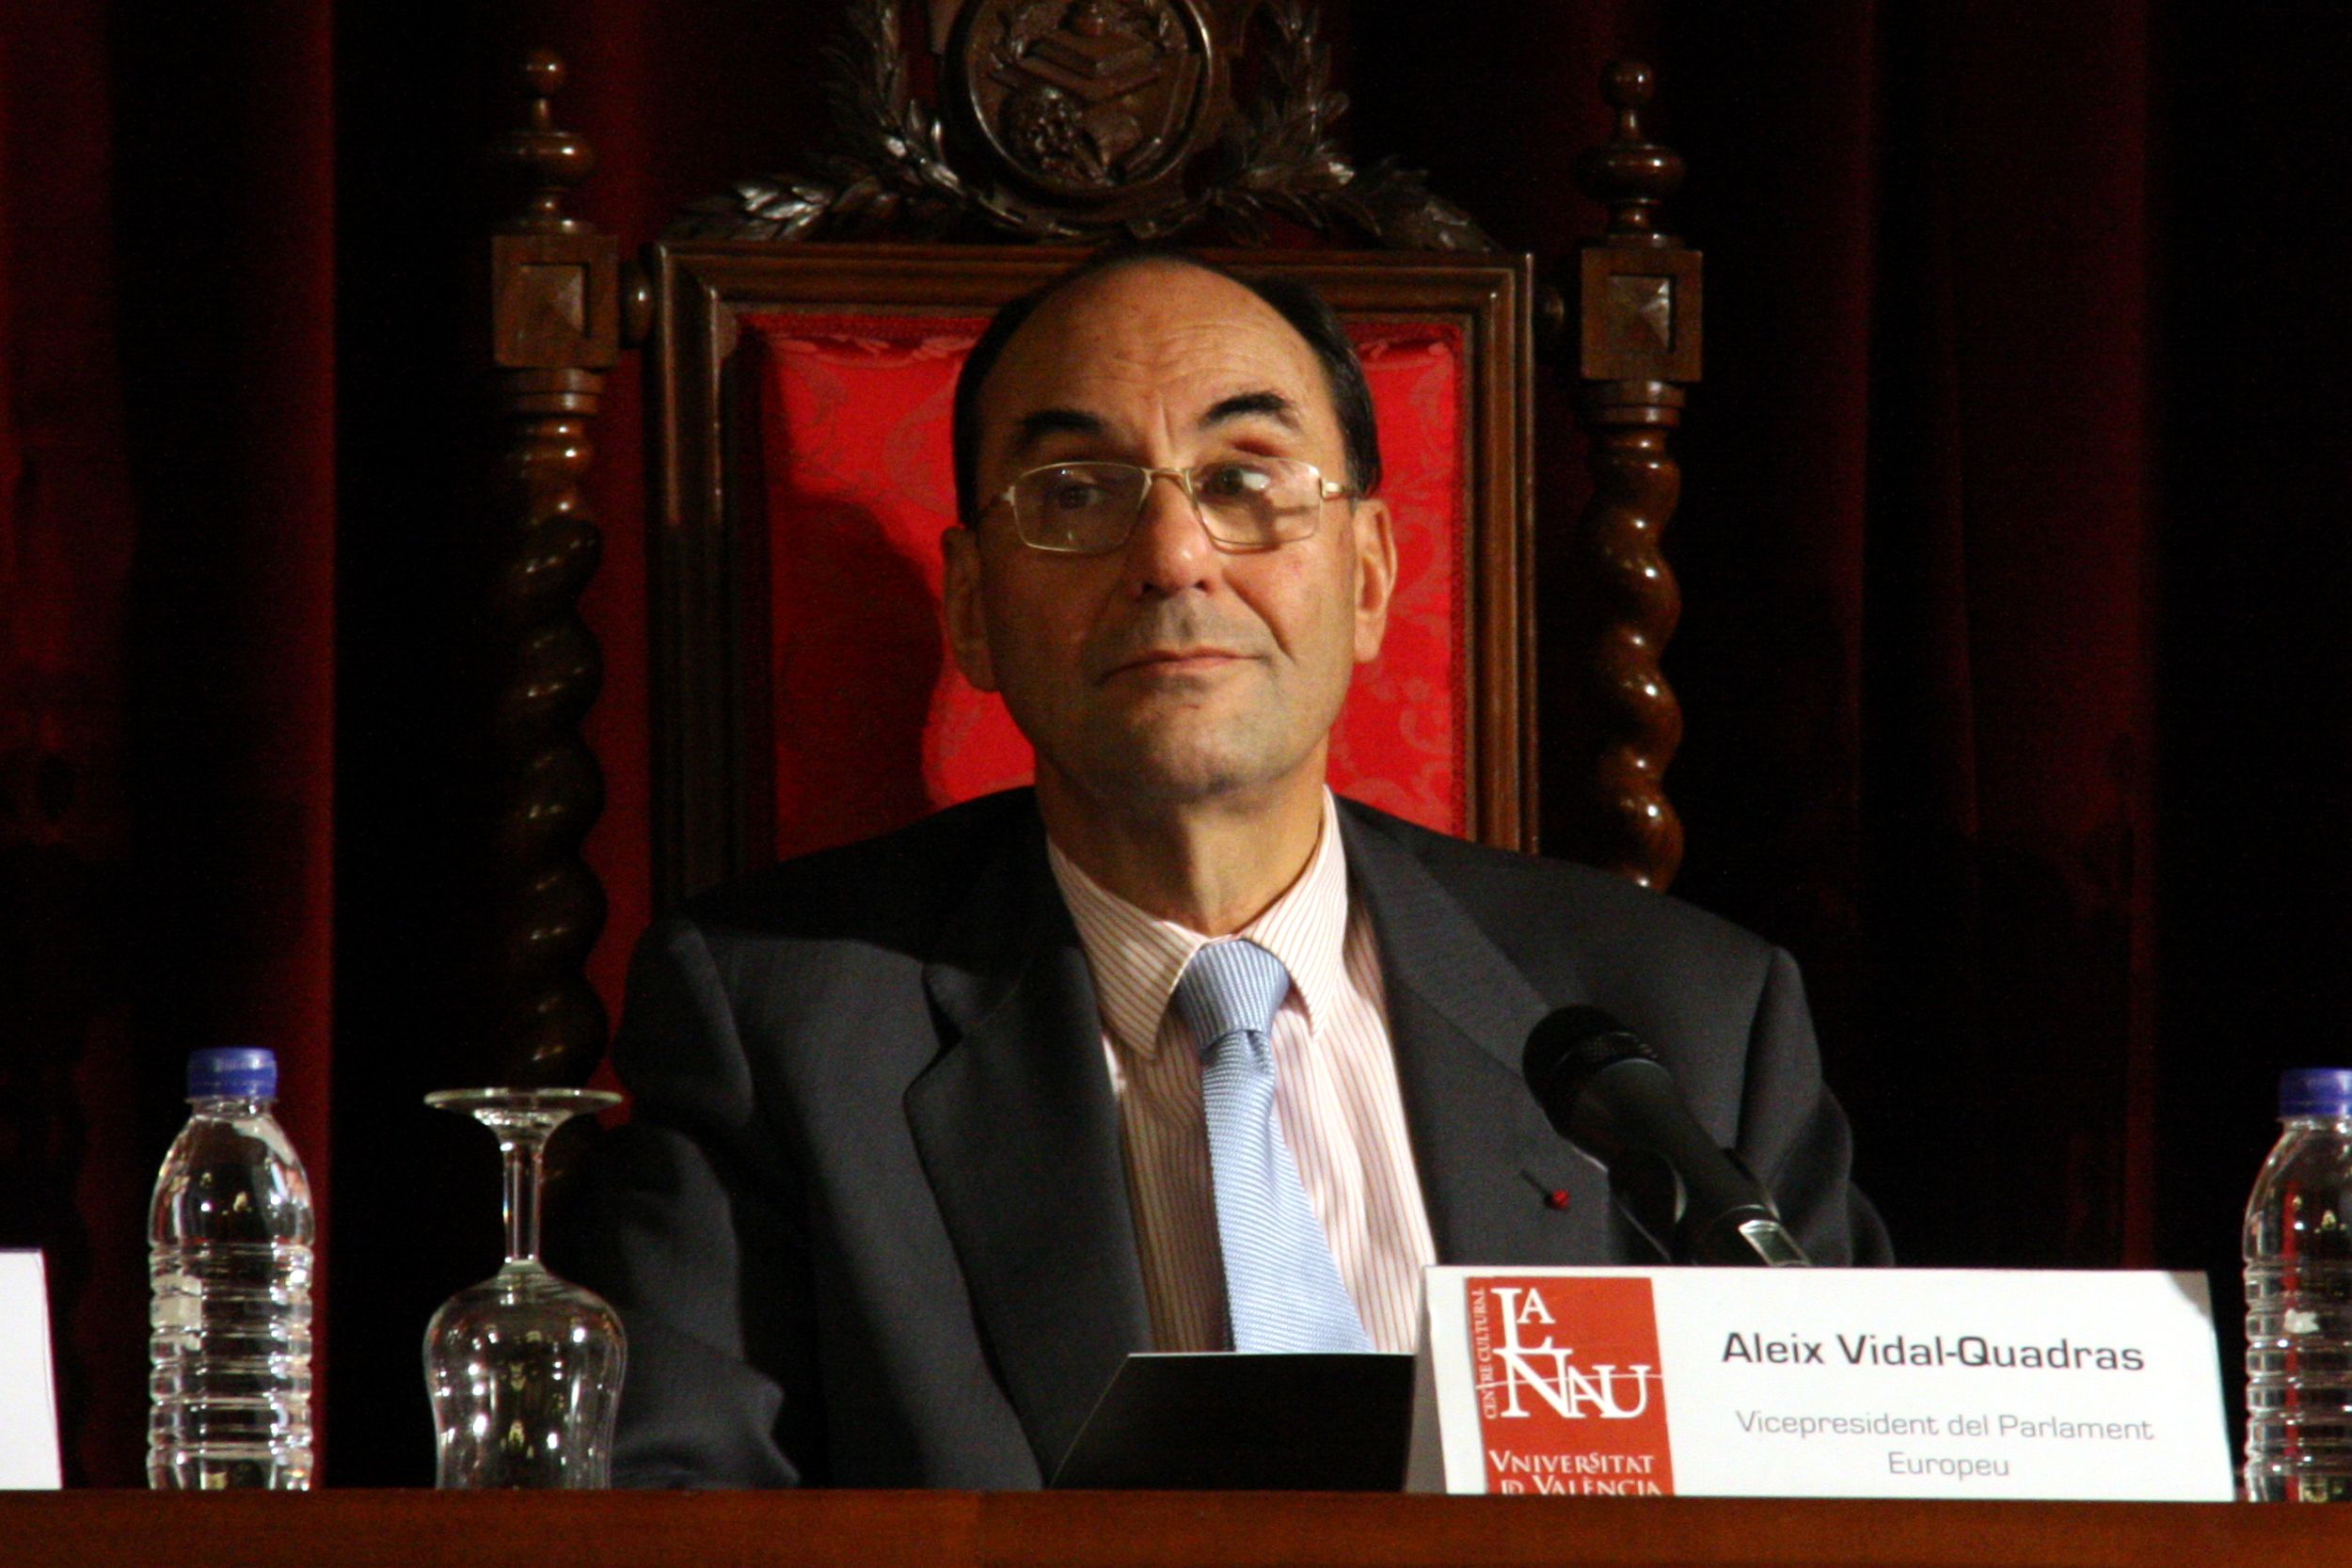 L’apocalipsi dels CDR, segons Vidal-Quadras